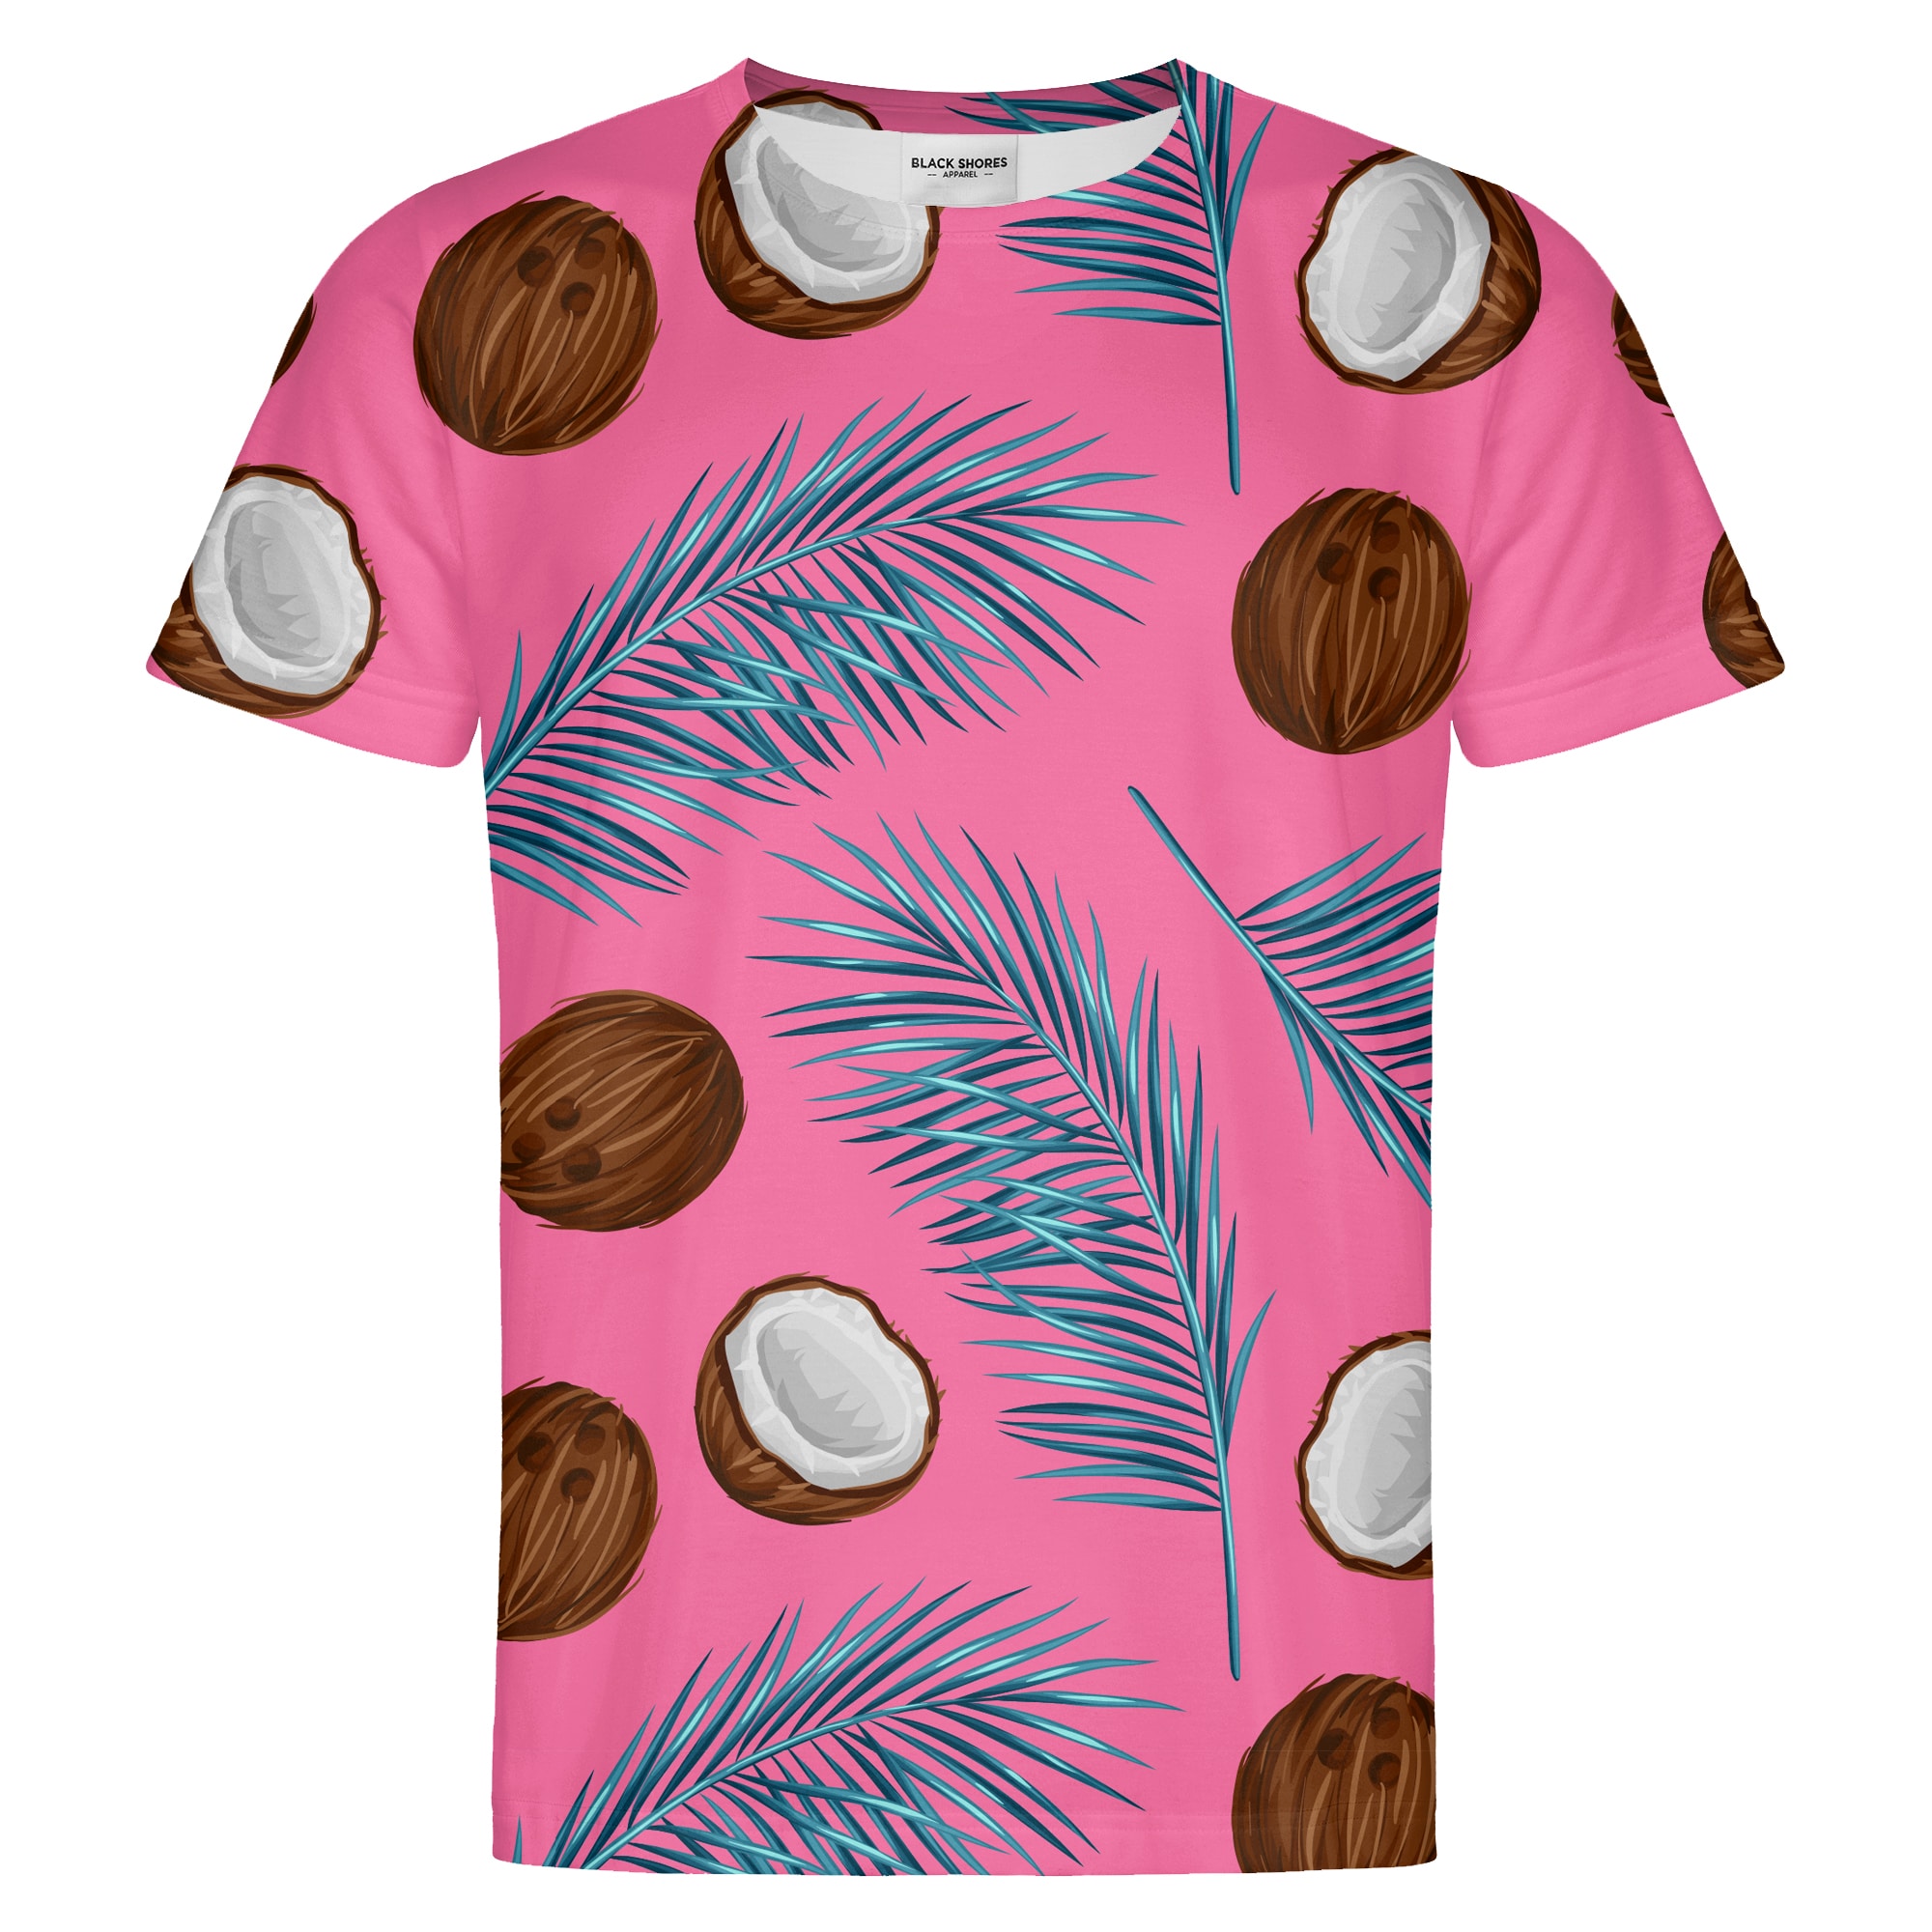 Coconuts T-shirt – Black Shores - S